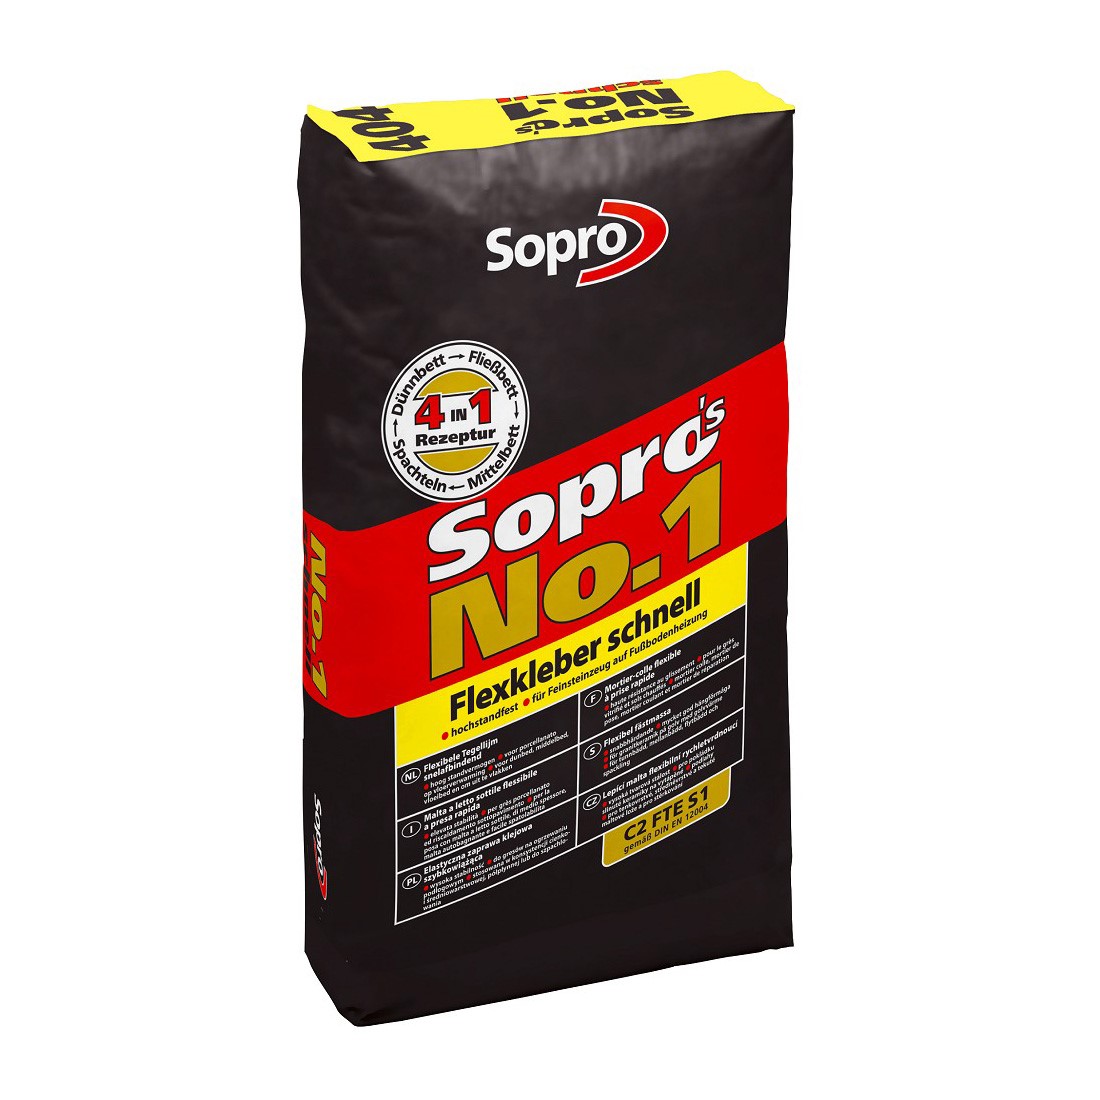 Sopro's Nr.1 Schnell-Flexkleber 25kg #404 